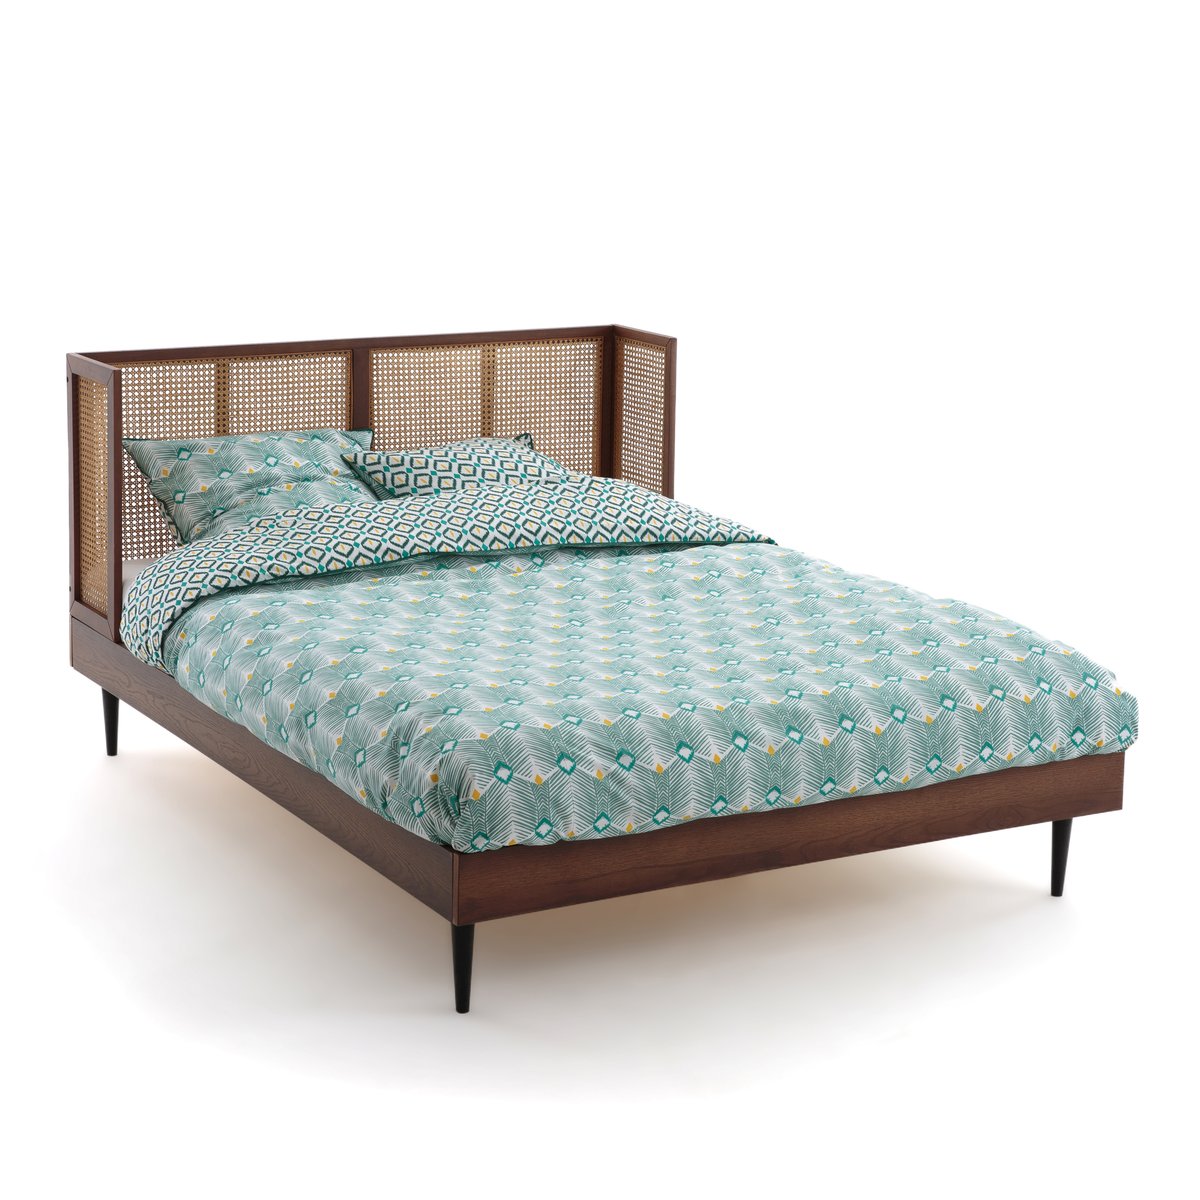 Кровать винтажная из плетеного ротанга с сеткой NOYA 160 x 200 см каштановый